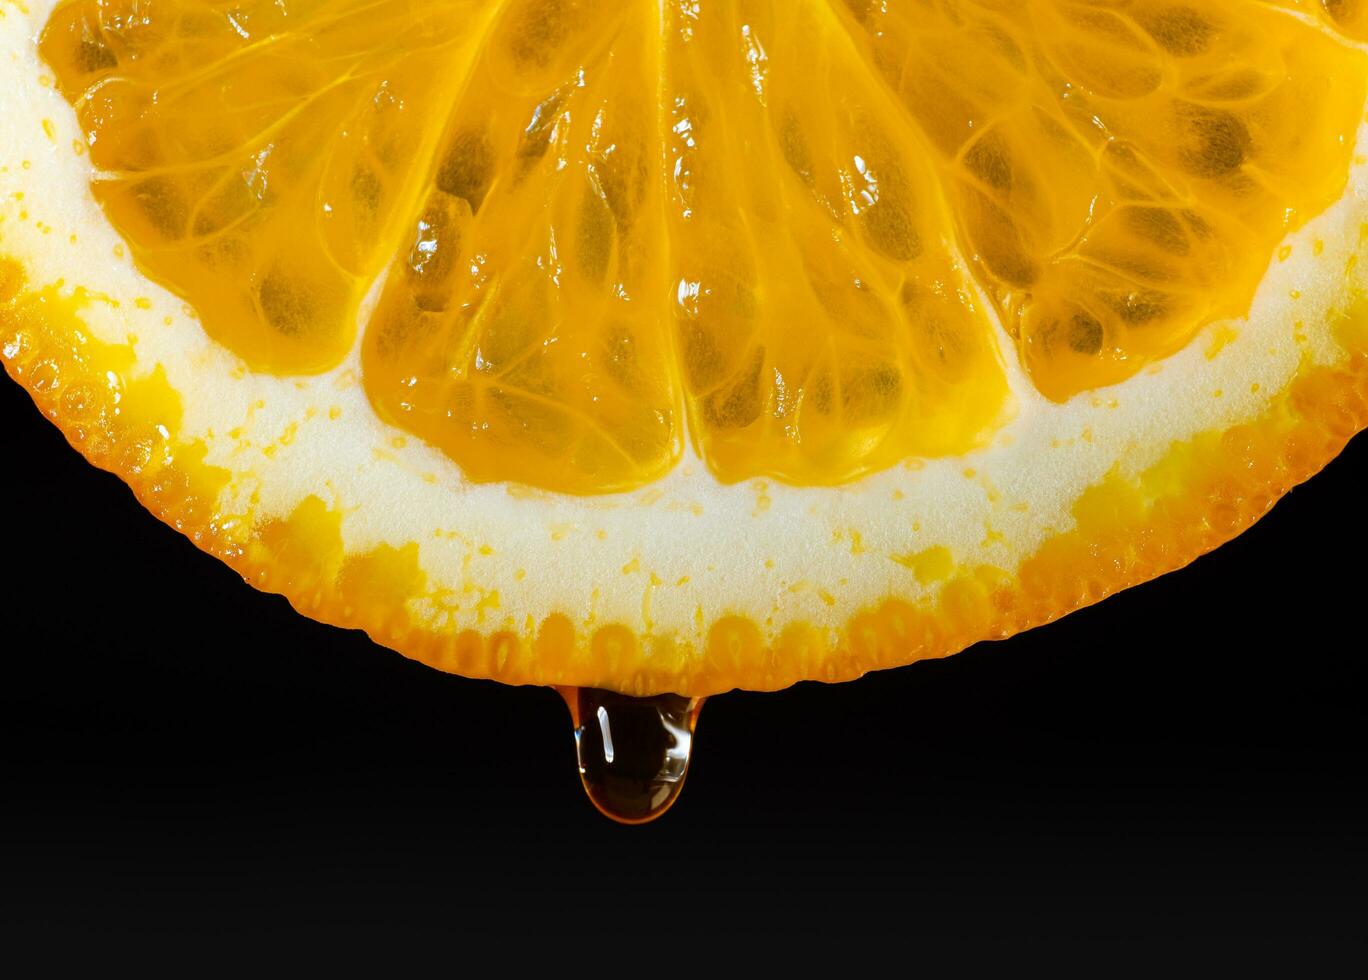 een oranje, gesneden en druipend met sap, geeft aan sappigheid. oranje sap druipend van oranje fruit. studio schot fruit met water druppels foto